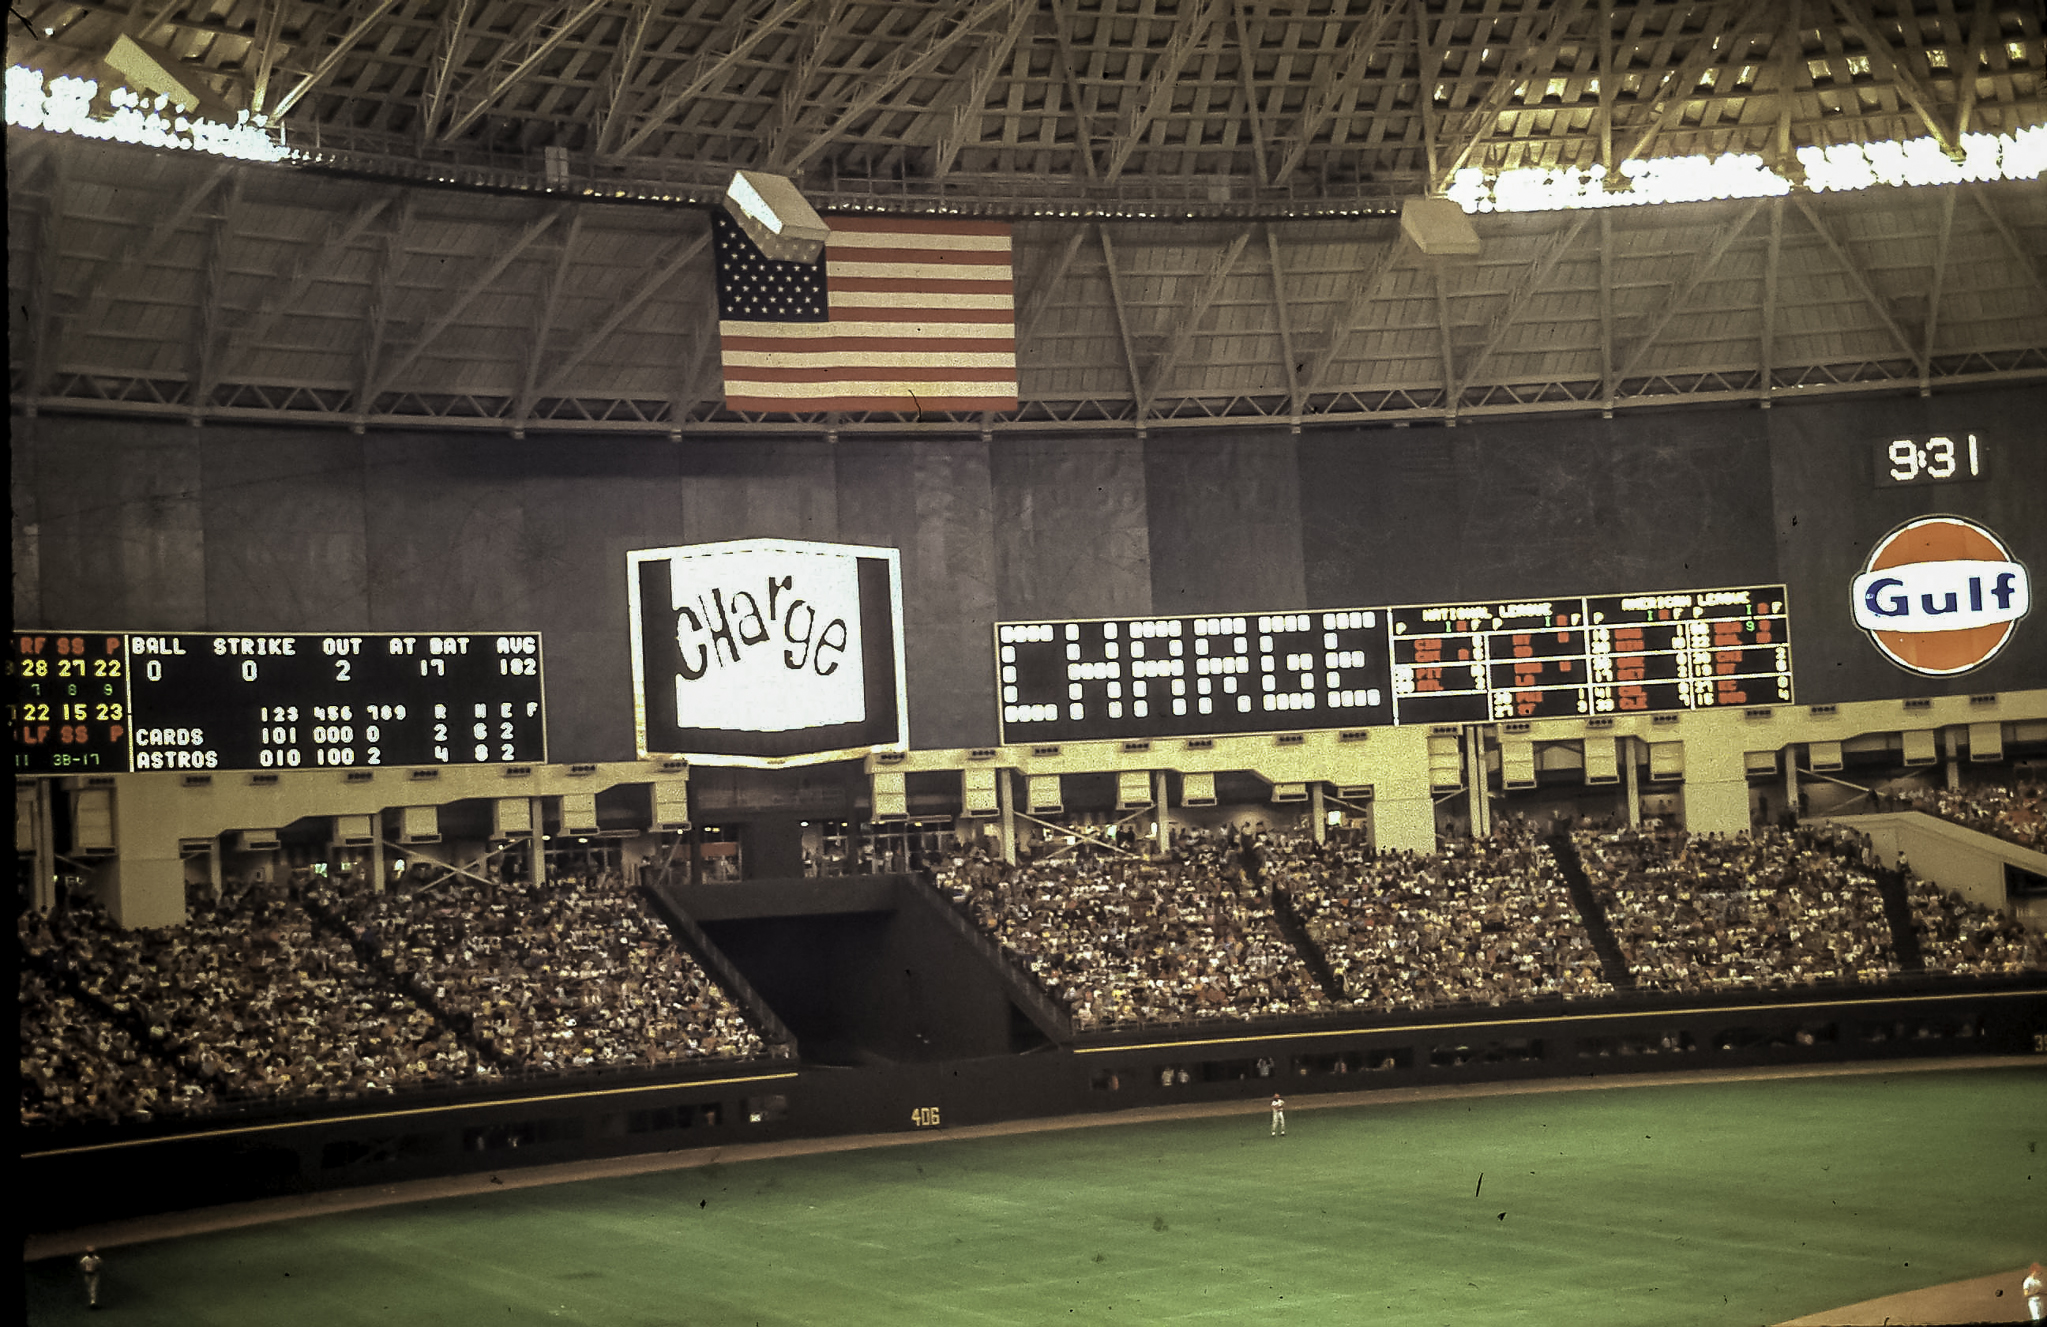 File:Astrodome scoreboard 1969.jpg - Wikipedia